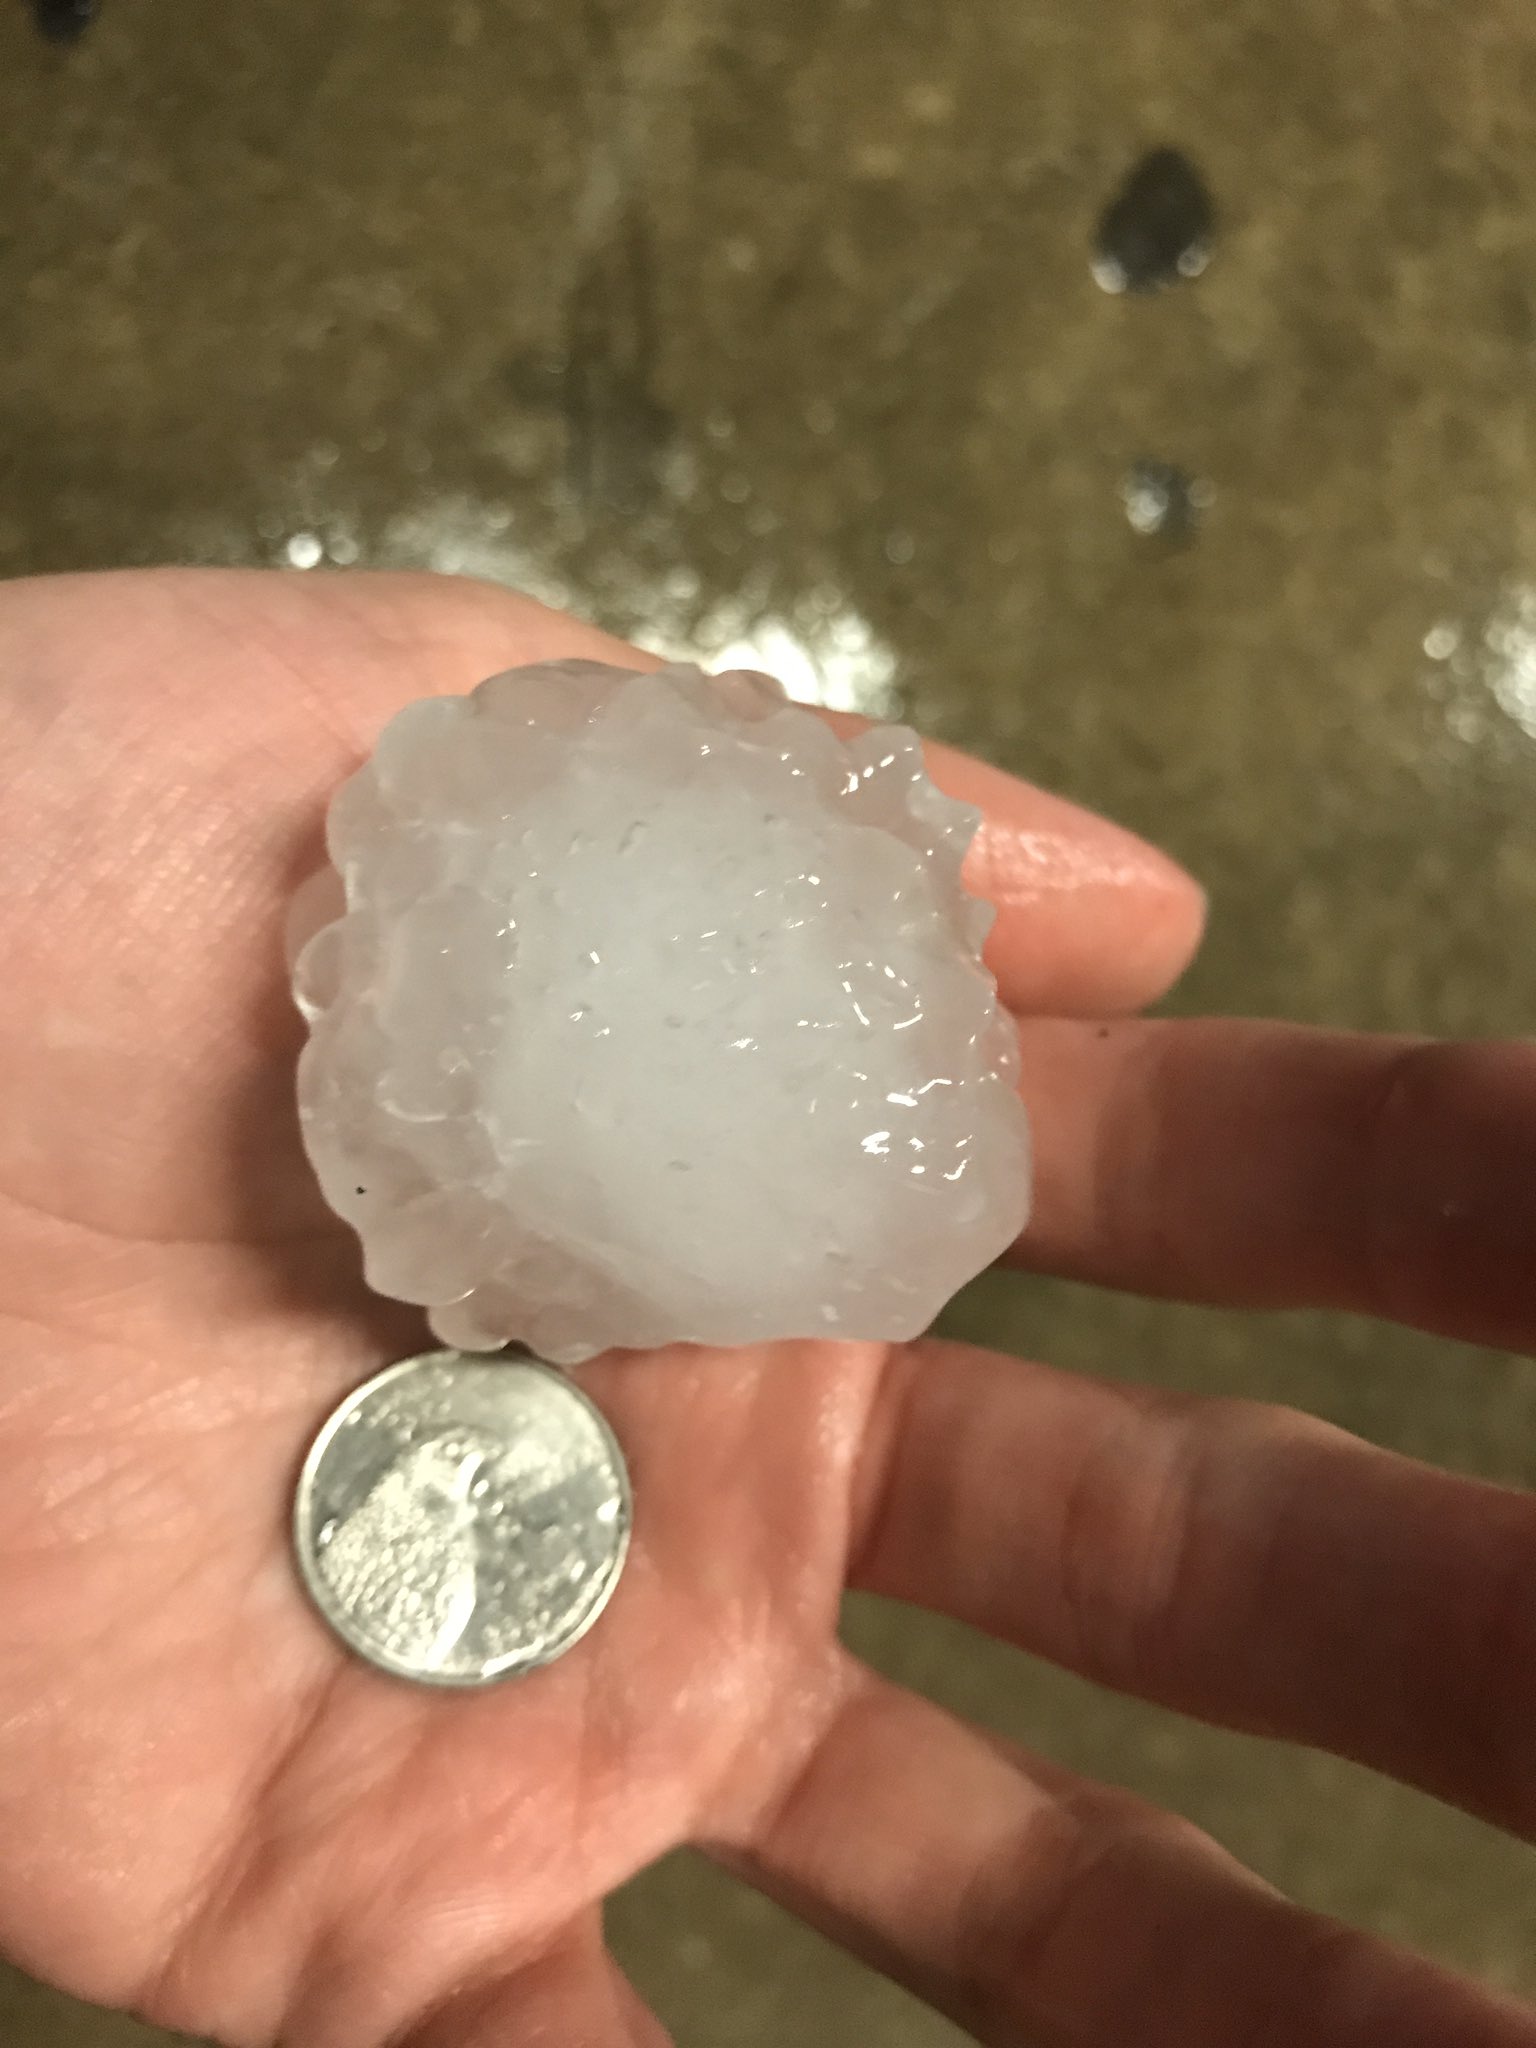 Large hail near Charlotte